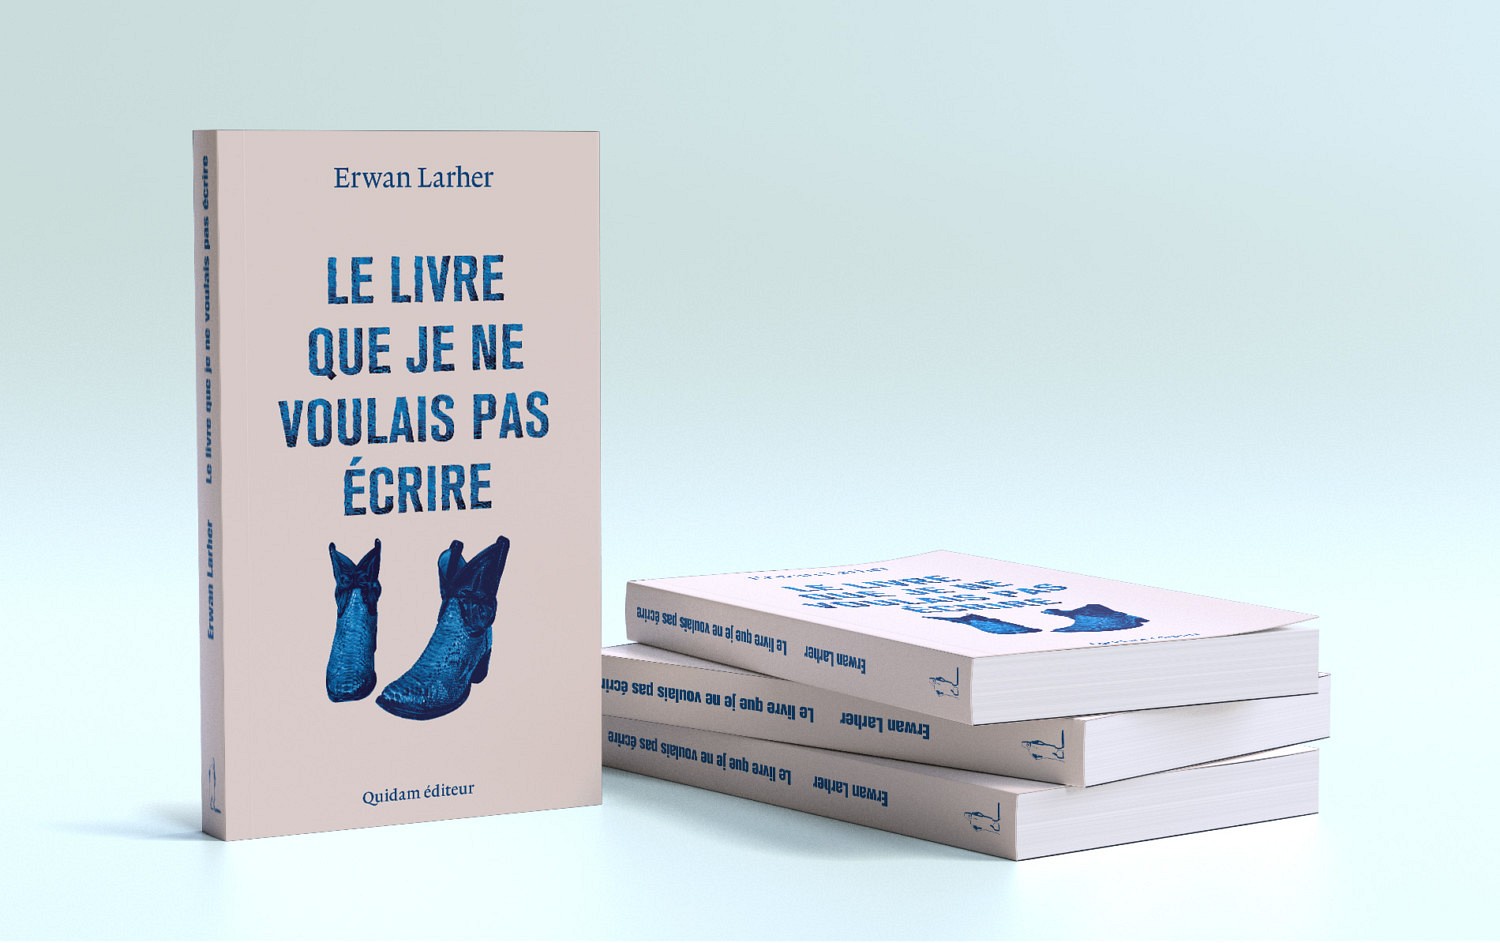 Le livre que je ne voulais pas écrire - Erwan Larher | Santiags et typo réalisées sous Photoshop au pinceau numérique.